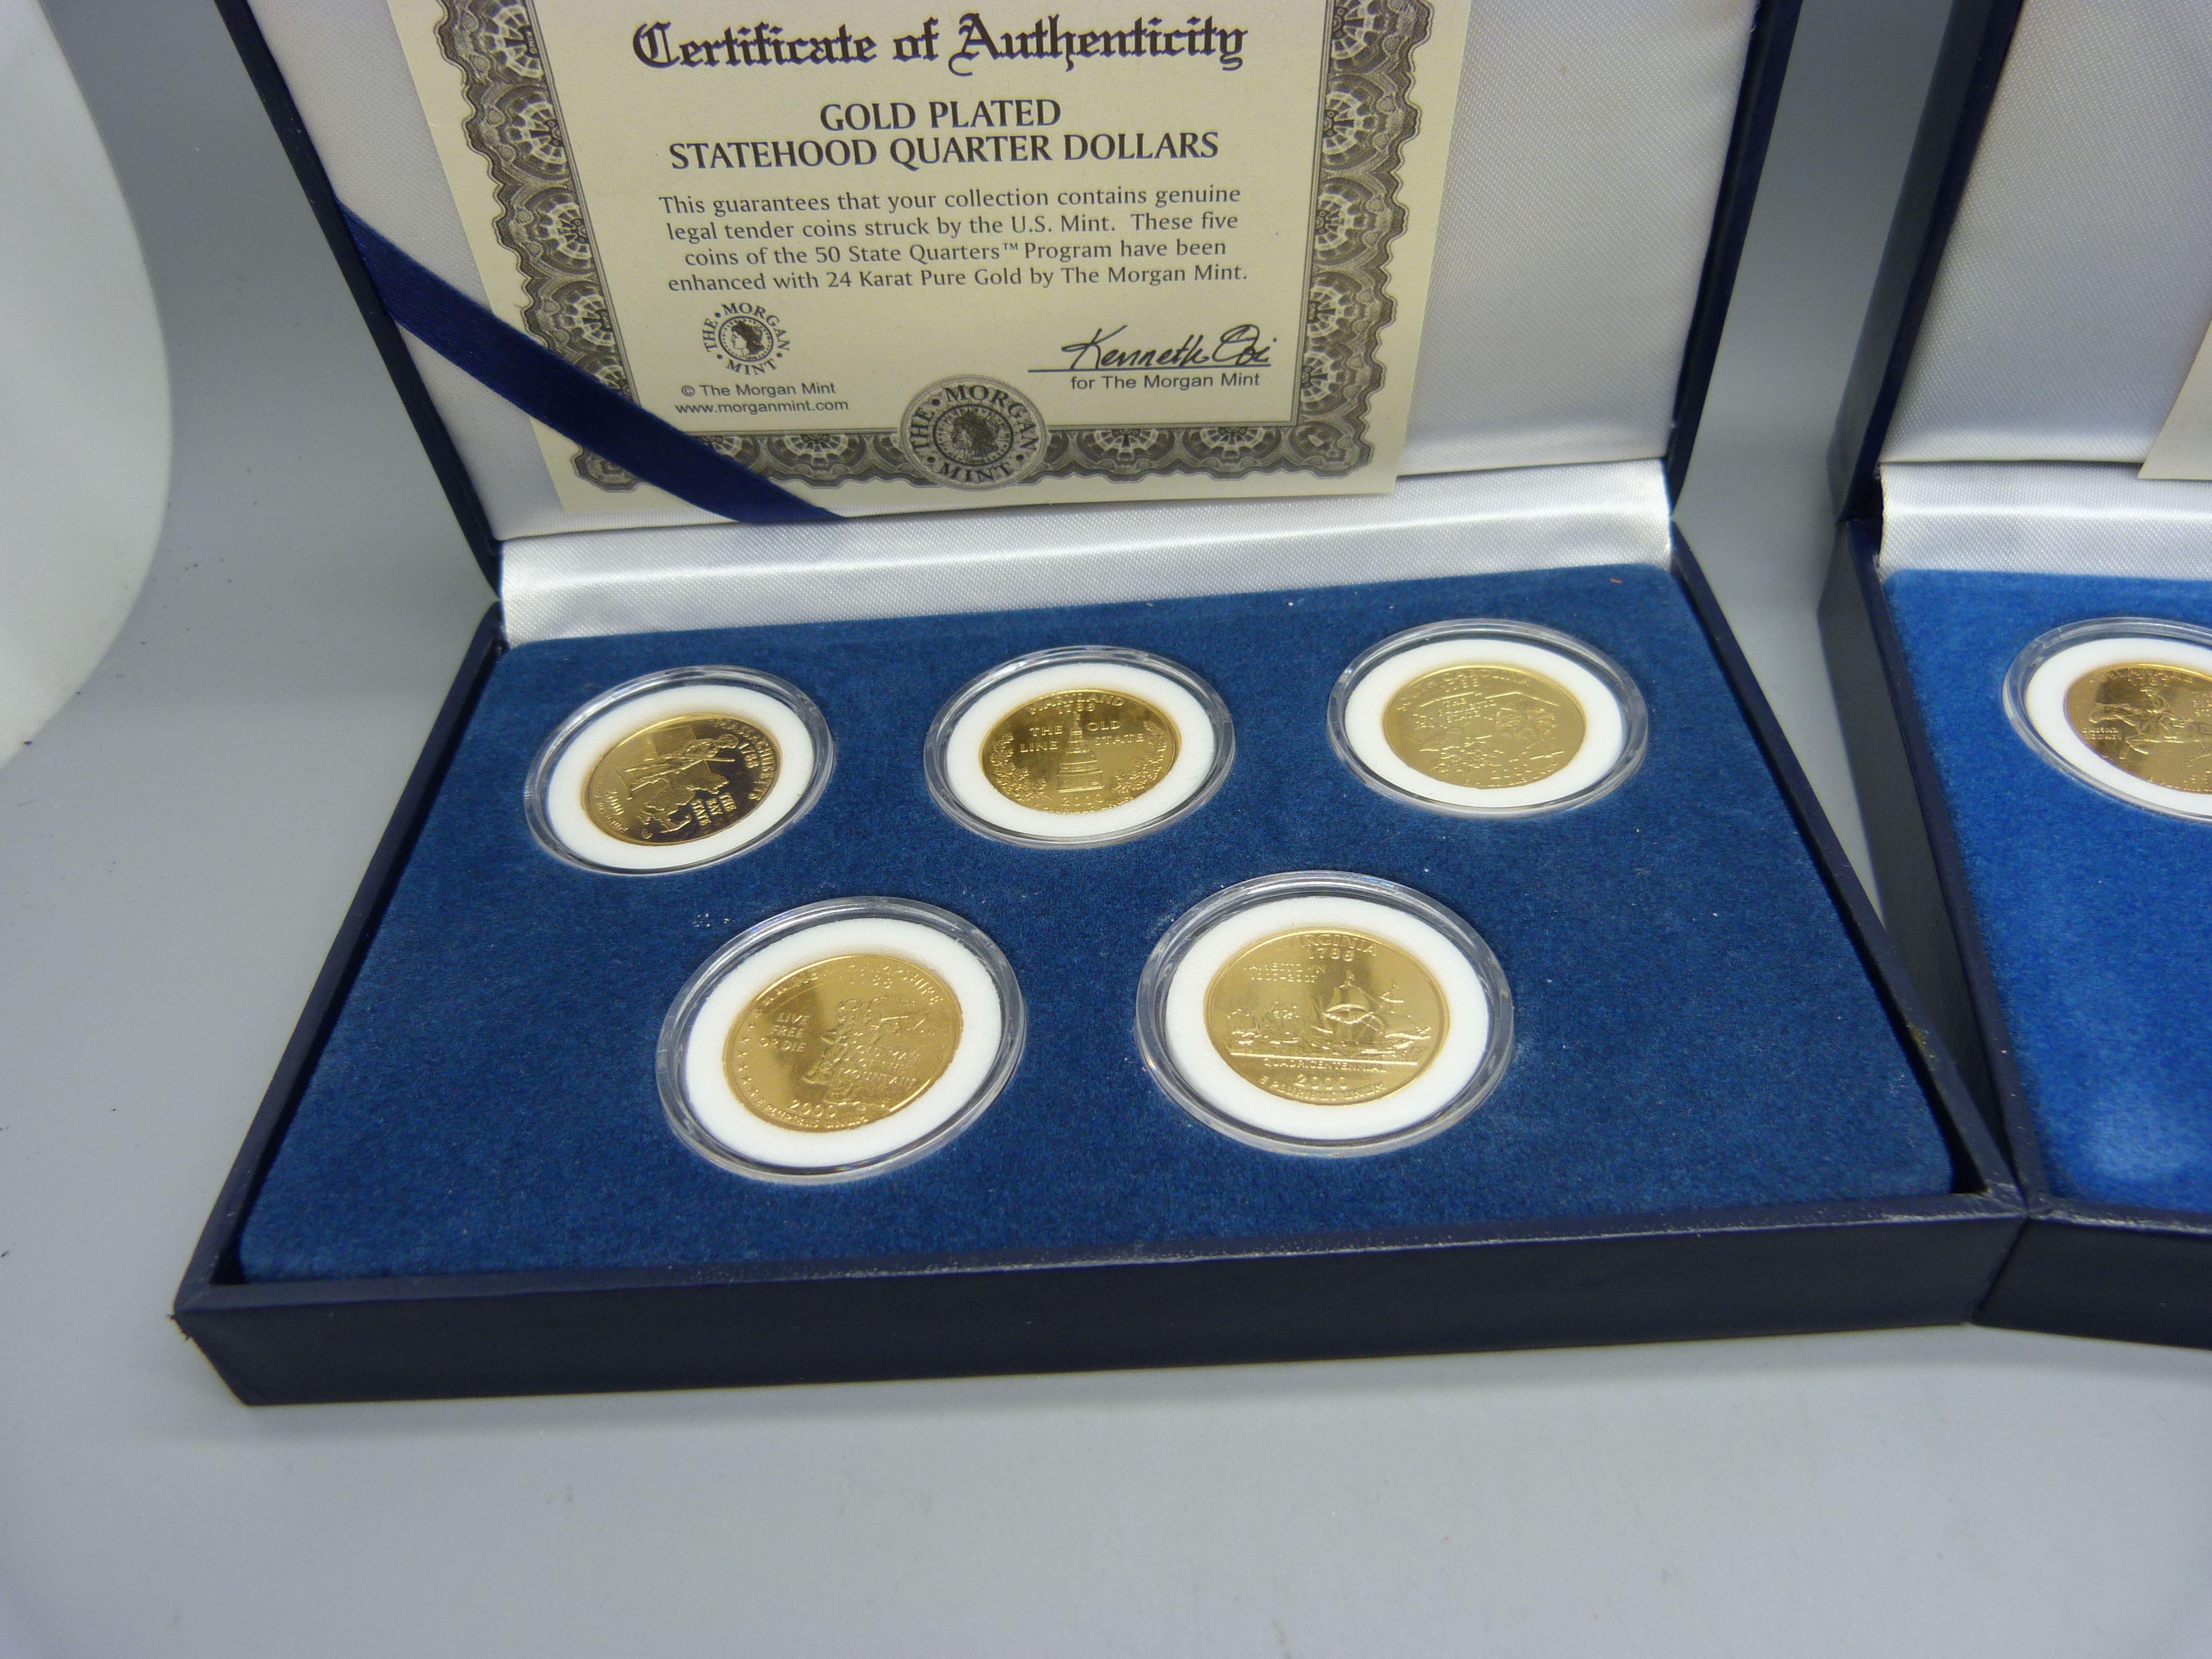 2 x 5 Statehood Quarter Dollars coin sets, cased - Image 2 of 3